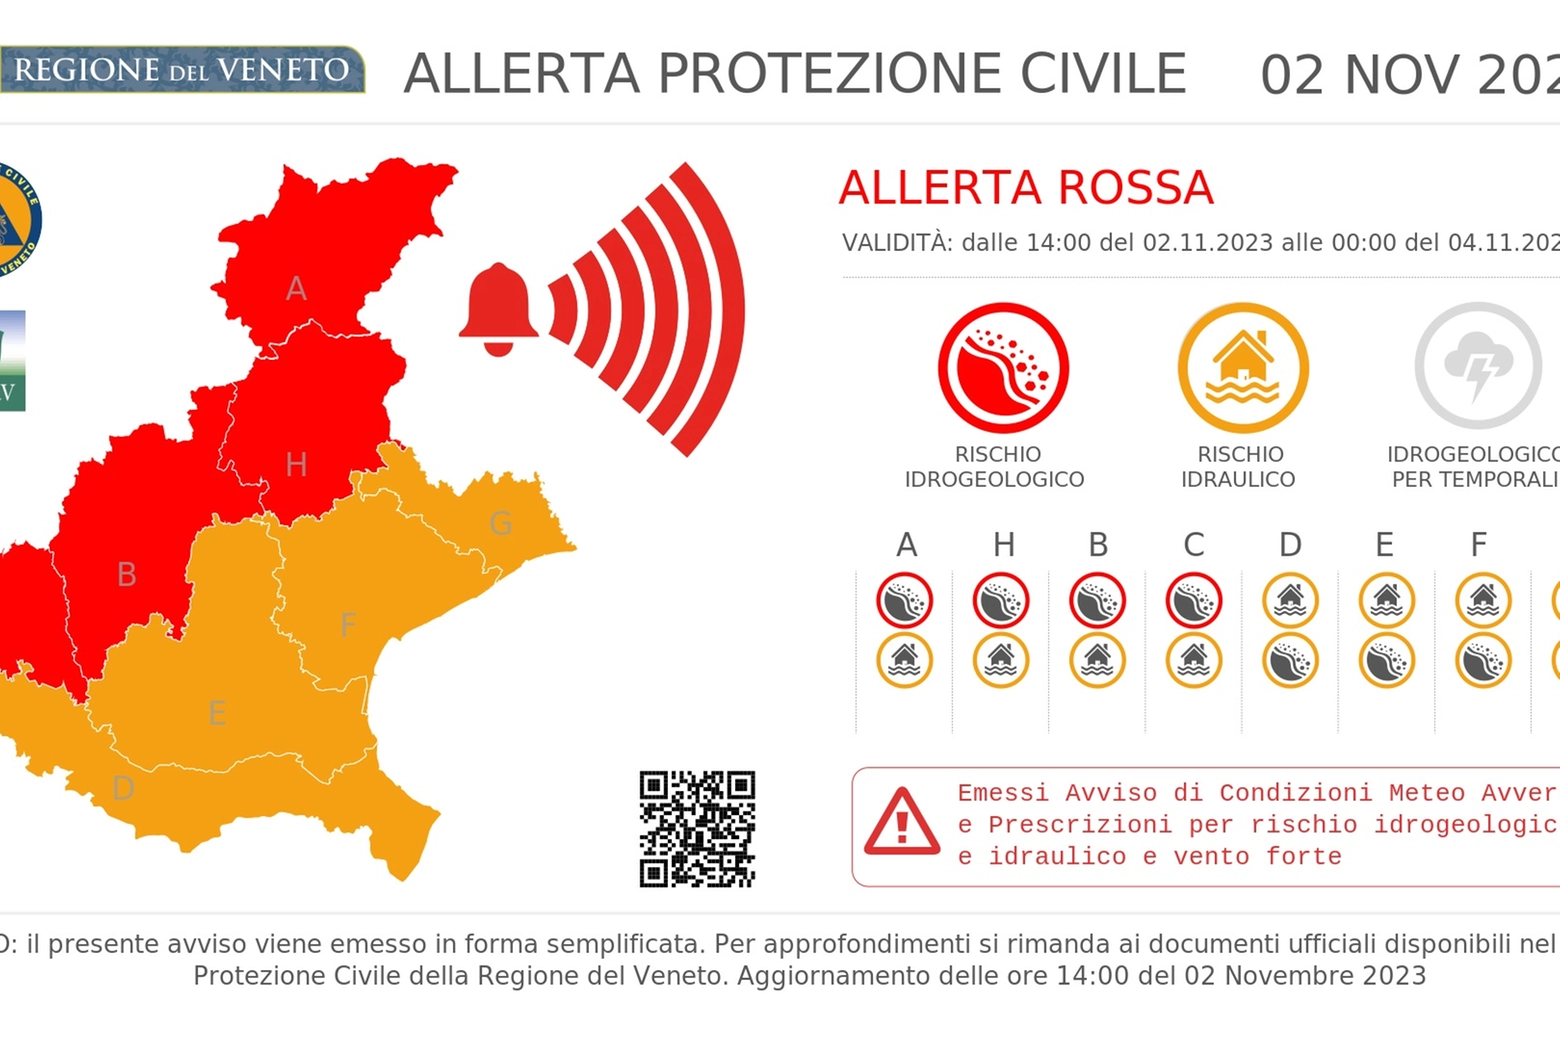 Allerta meteo in Veneto: la mappa delle criticità